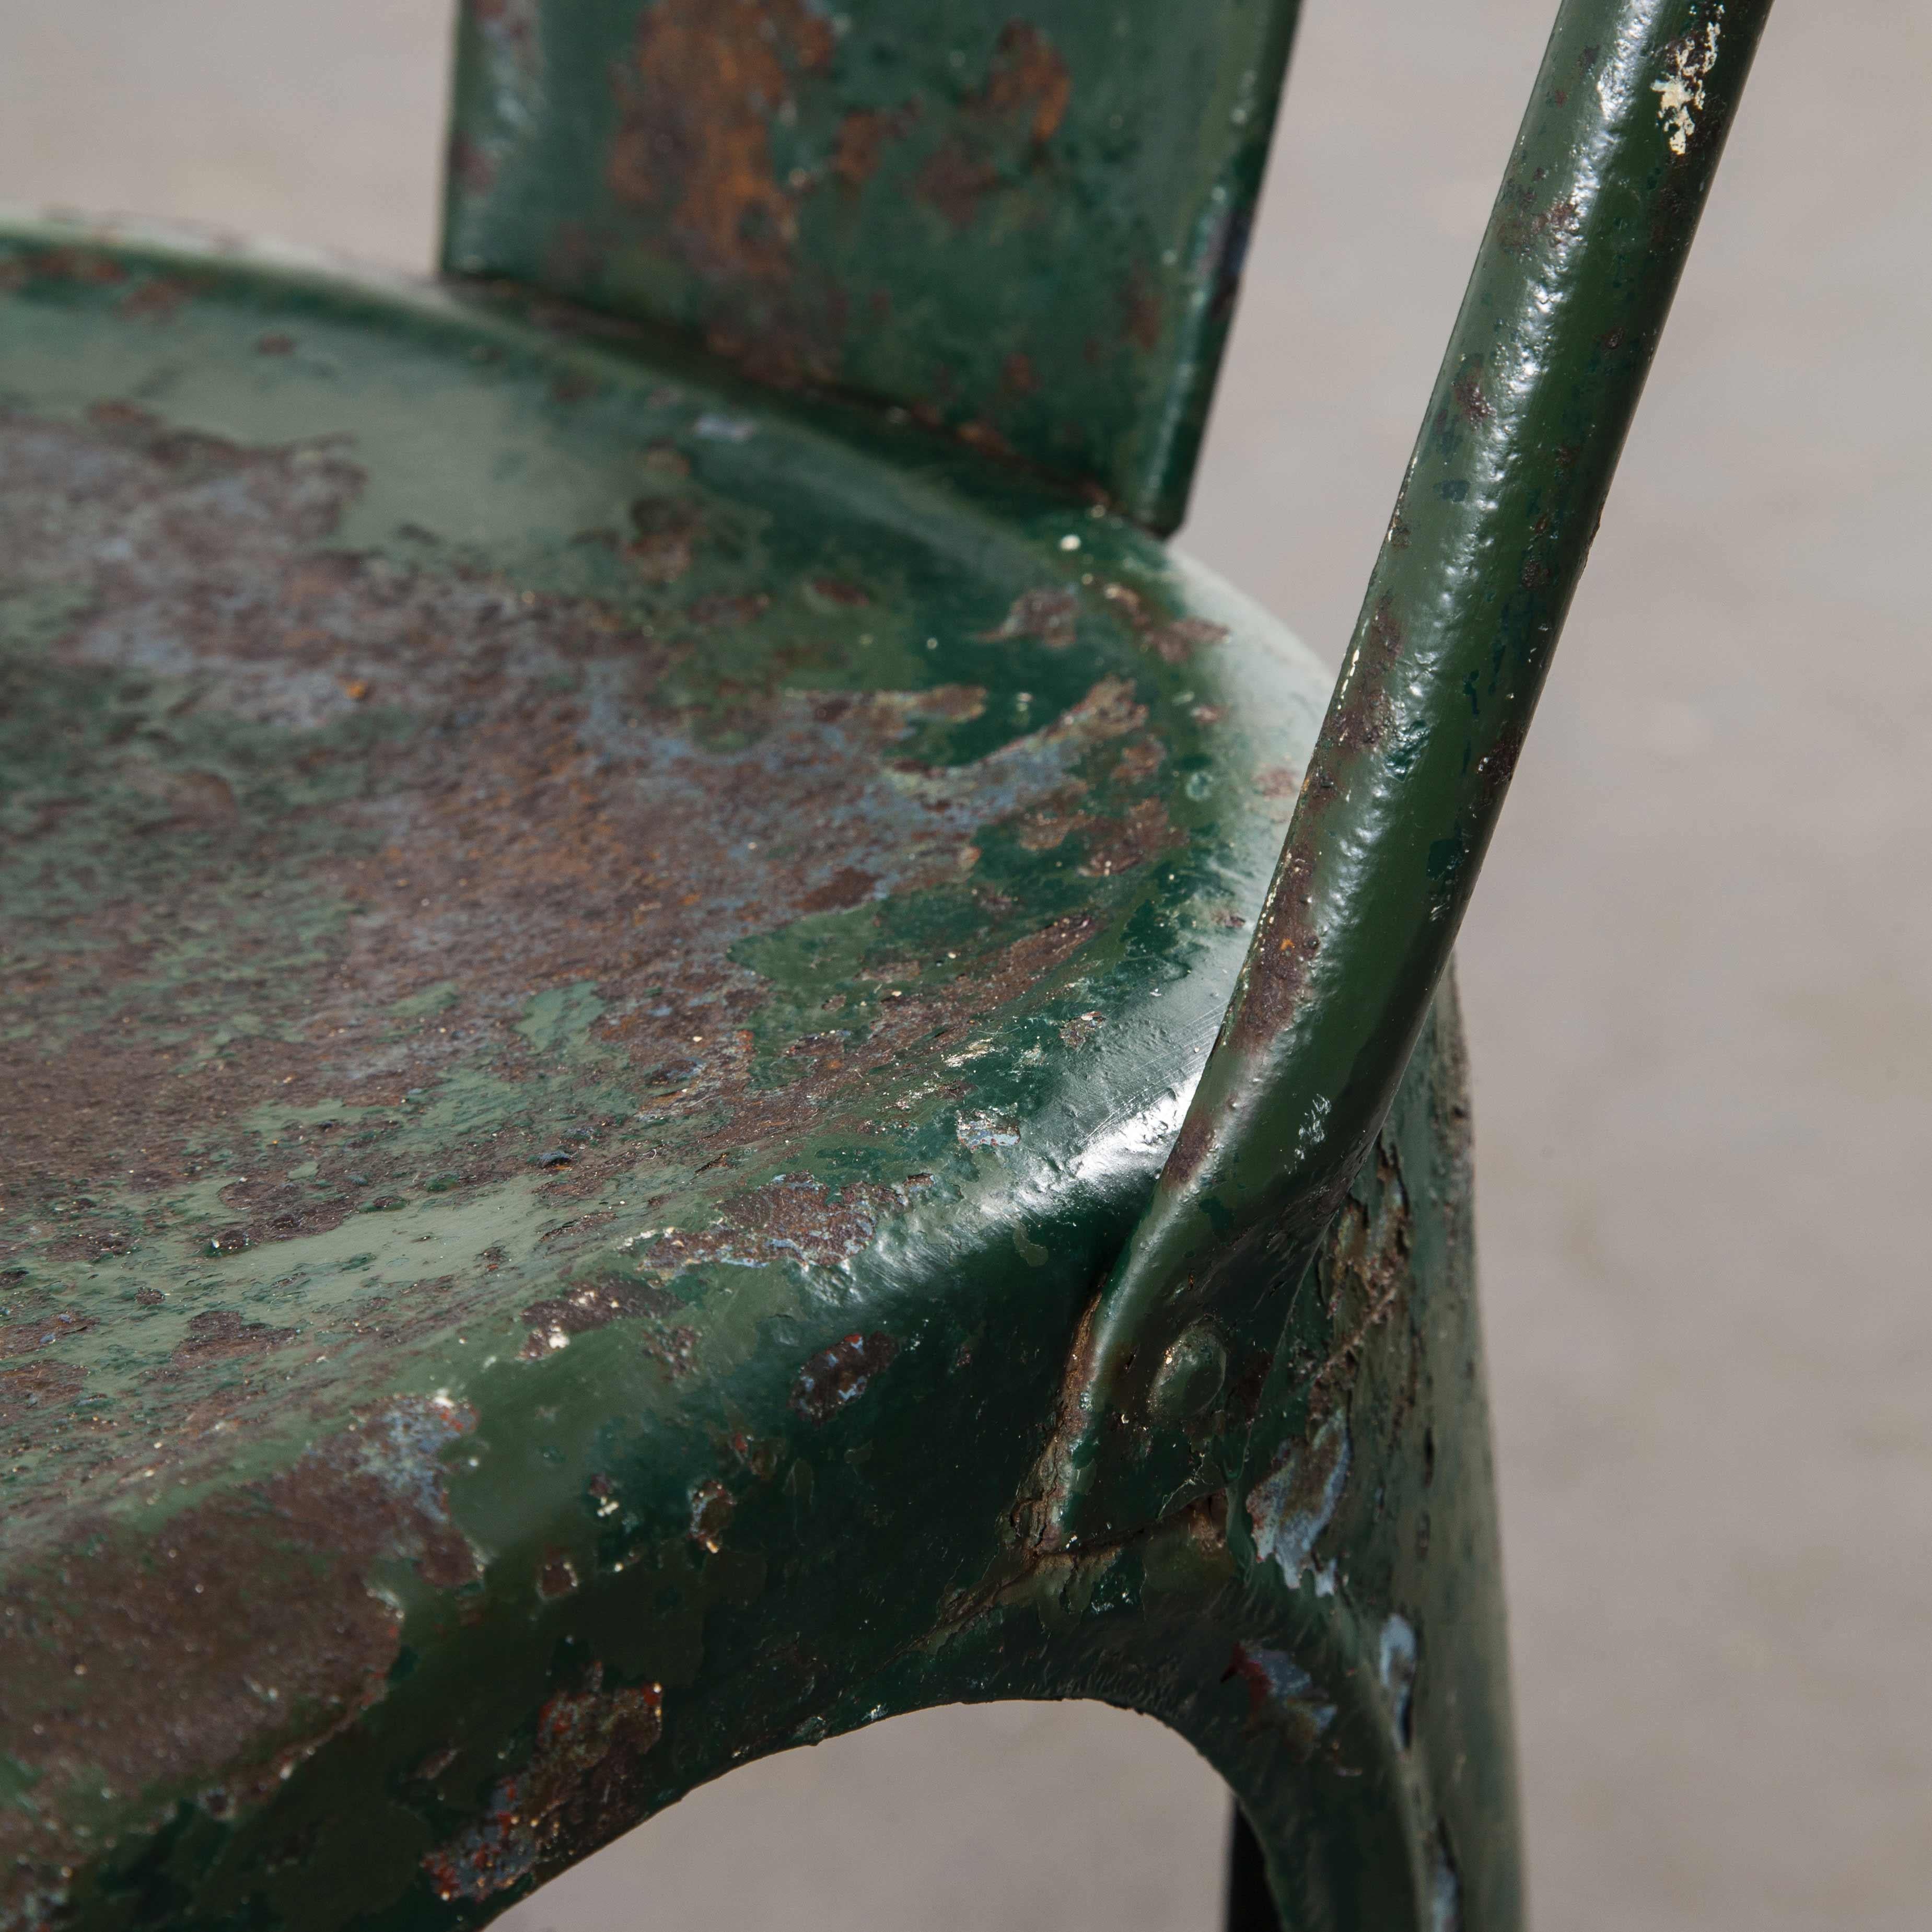 Chaise de salle à manger Tolix d'origine des années 1940, modèle A, verte

Chaise de salle à manger Tolix originale des années 1940, modèle A. La première production du modèle A a eu lieu dans les années 1930. Il s'agit d'un exemplaire très